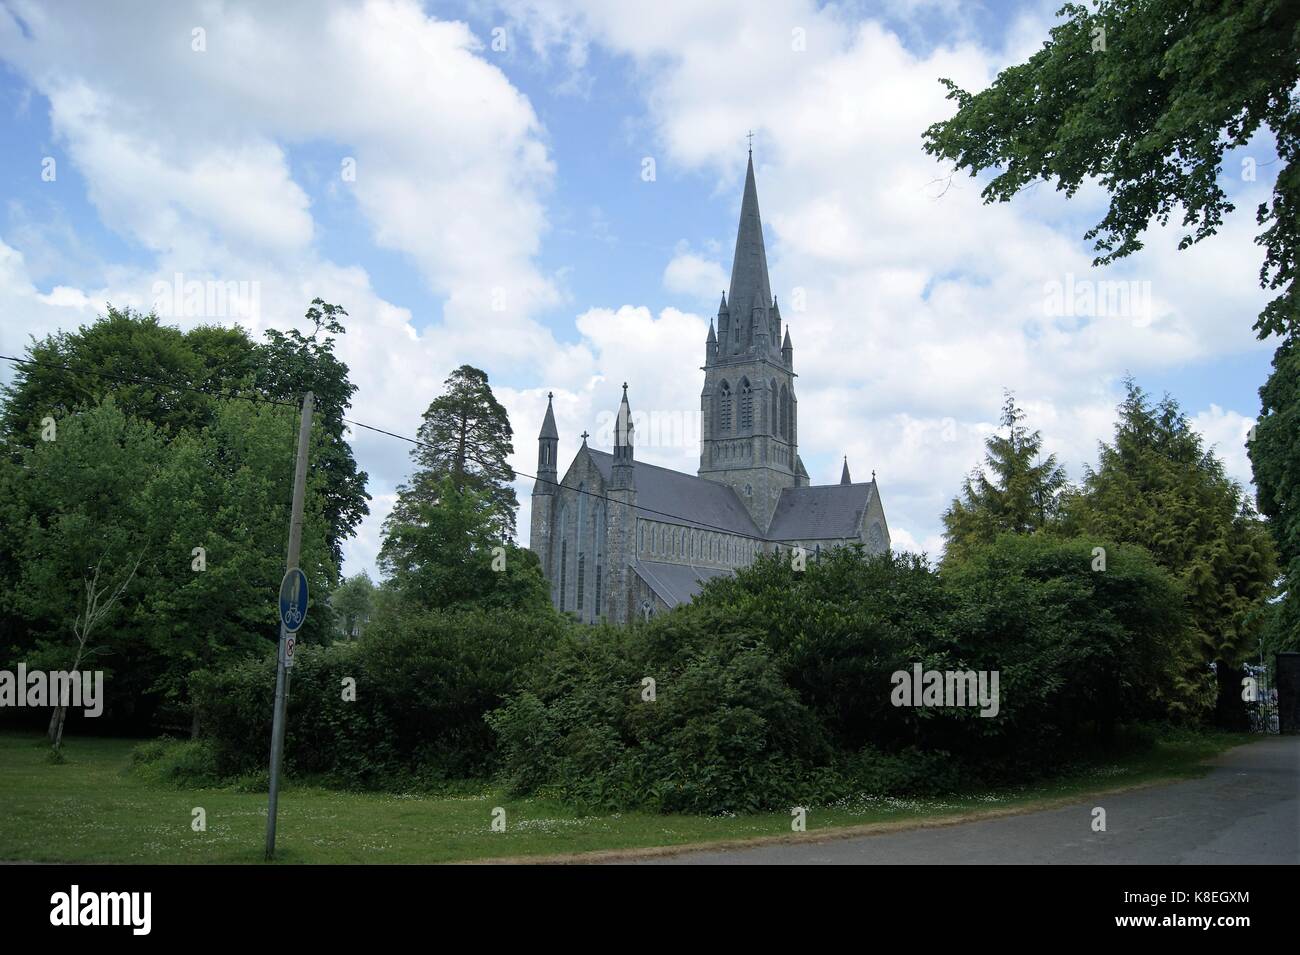 KIllarney Cathedral, Killarney Ireland Stock Photo